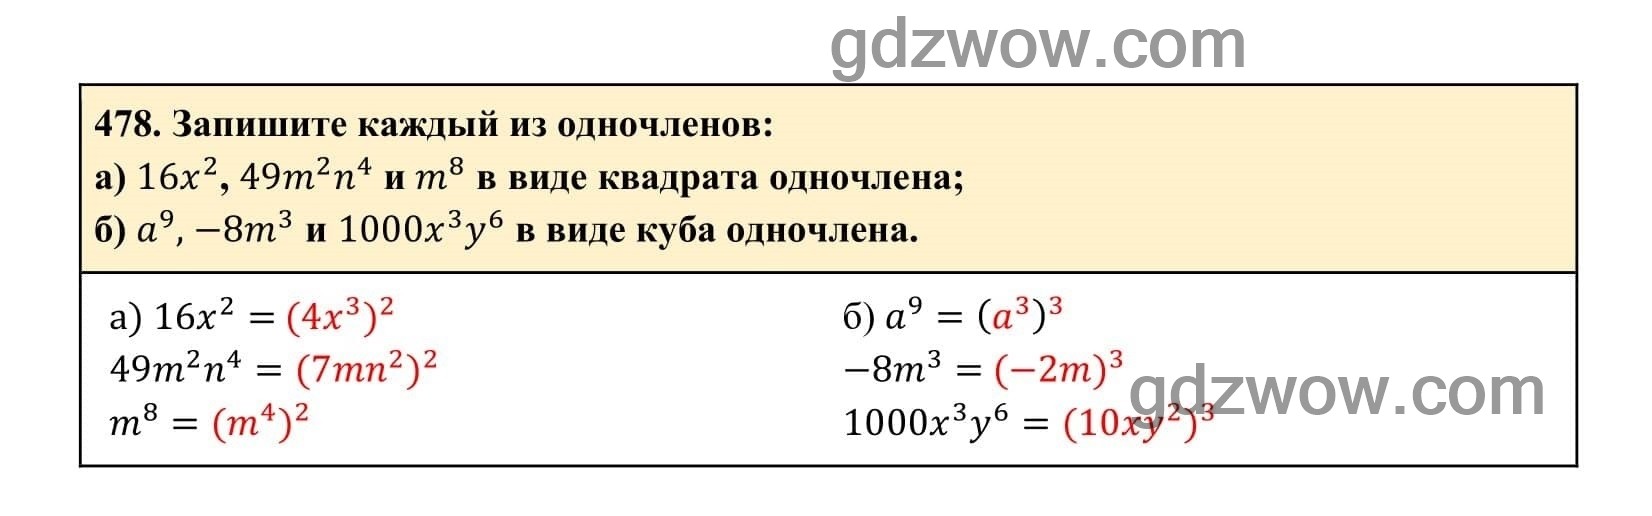 Упражнение 478 - ГДЗ по Алгебре 7 класс Учебник Макарычев (решебник) - GDZwow